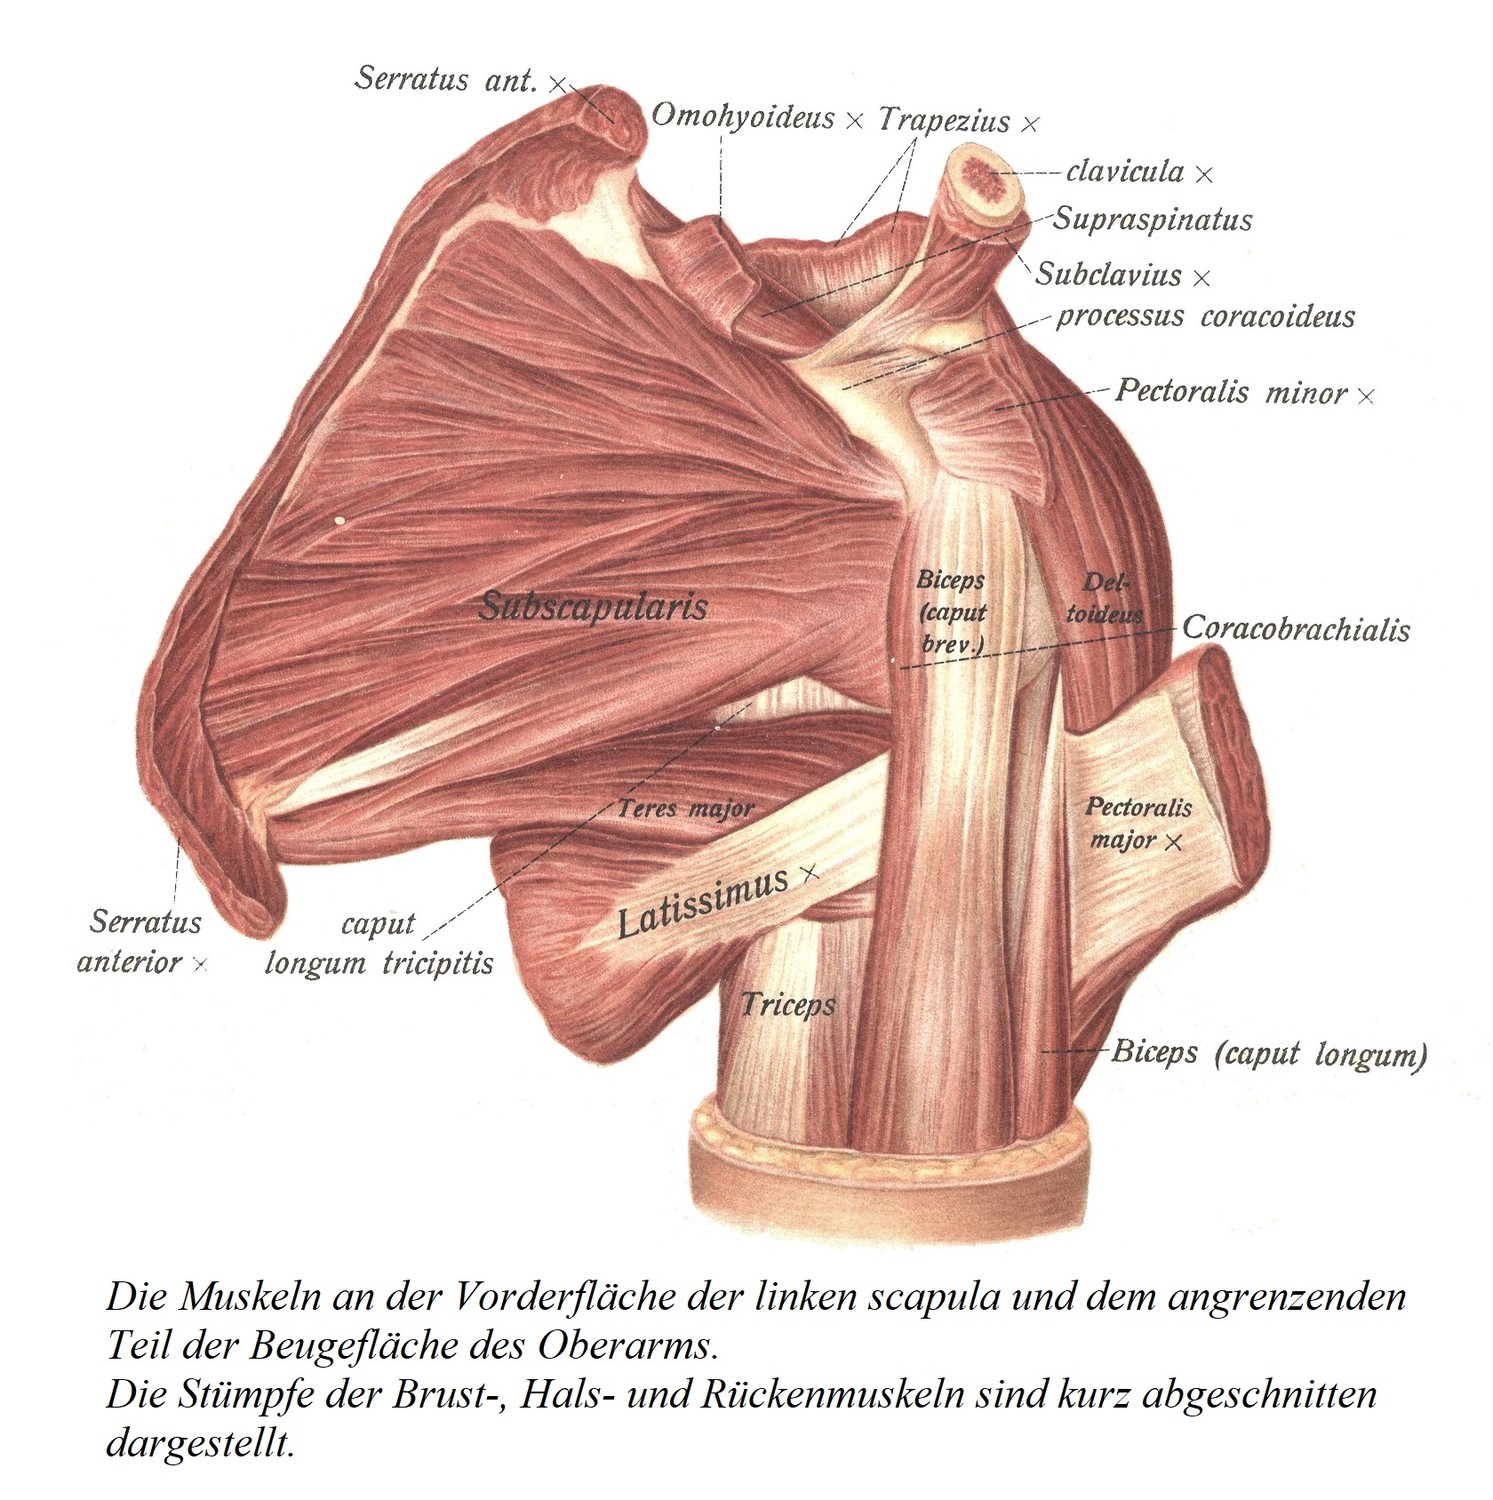 Мышцы передней поверхности левой лопатки и прилежащего участка сгибательной поверхности плечевой кости. Культи грудной клетки, шеи и мышц спины показаны коротко остриженными.